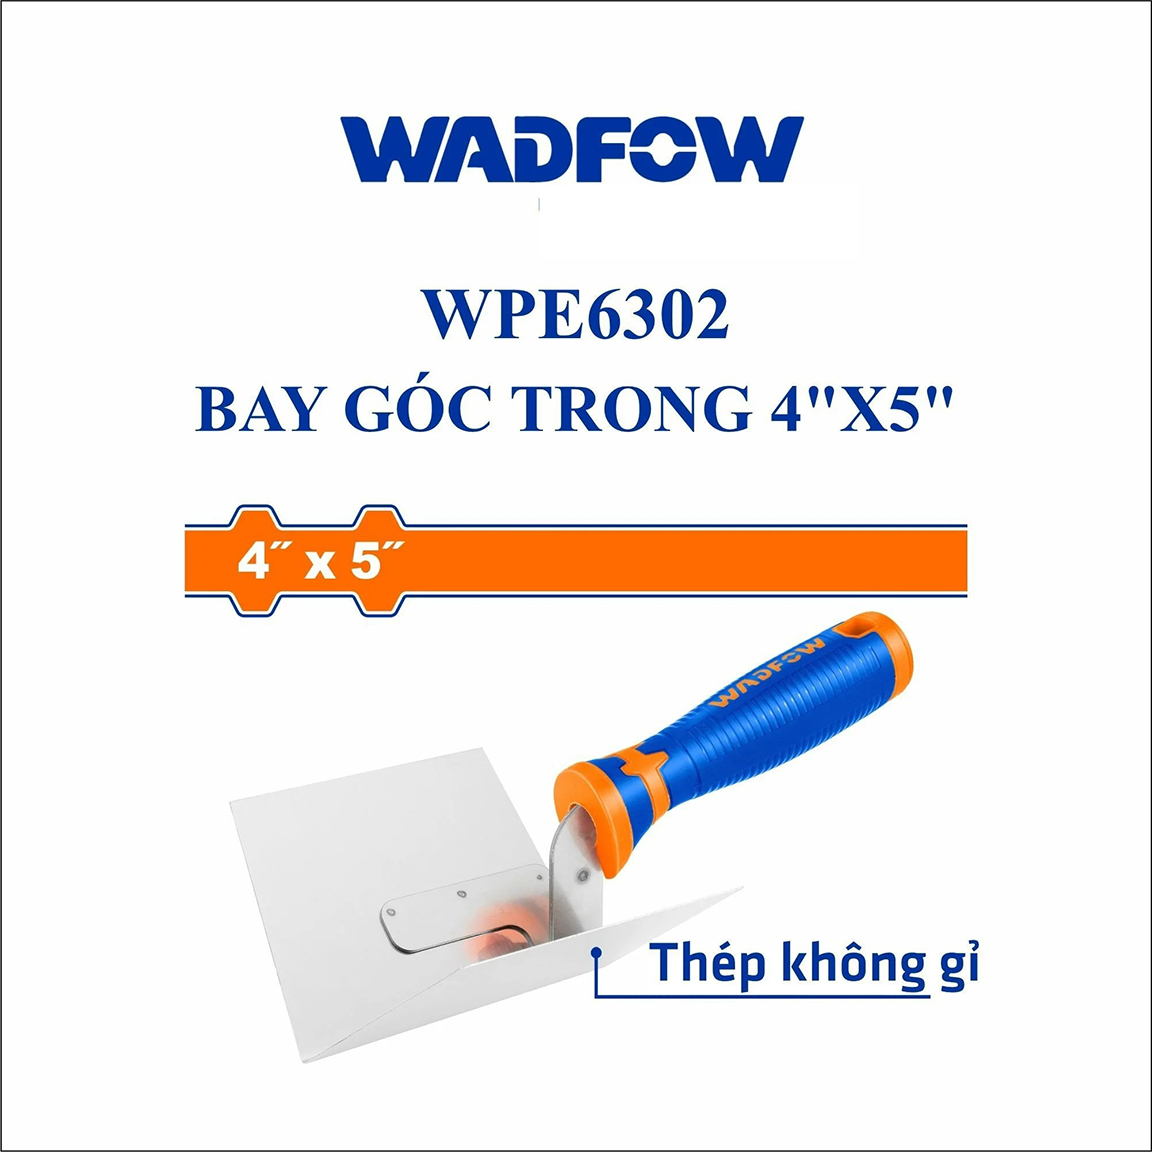 Hình ảnh 4 của mặt hàng Bay góc trong 4" x 5" Wadfow WPE6302